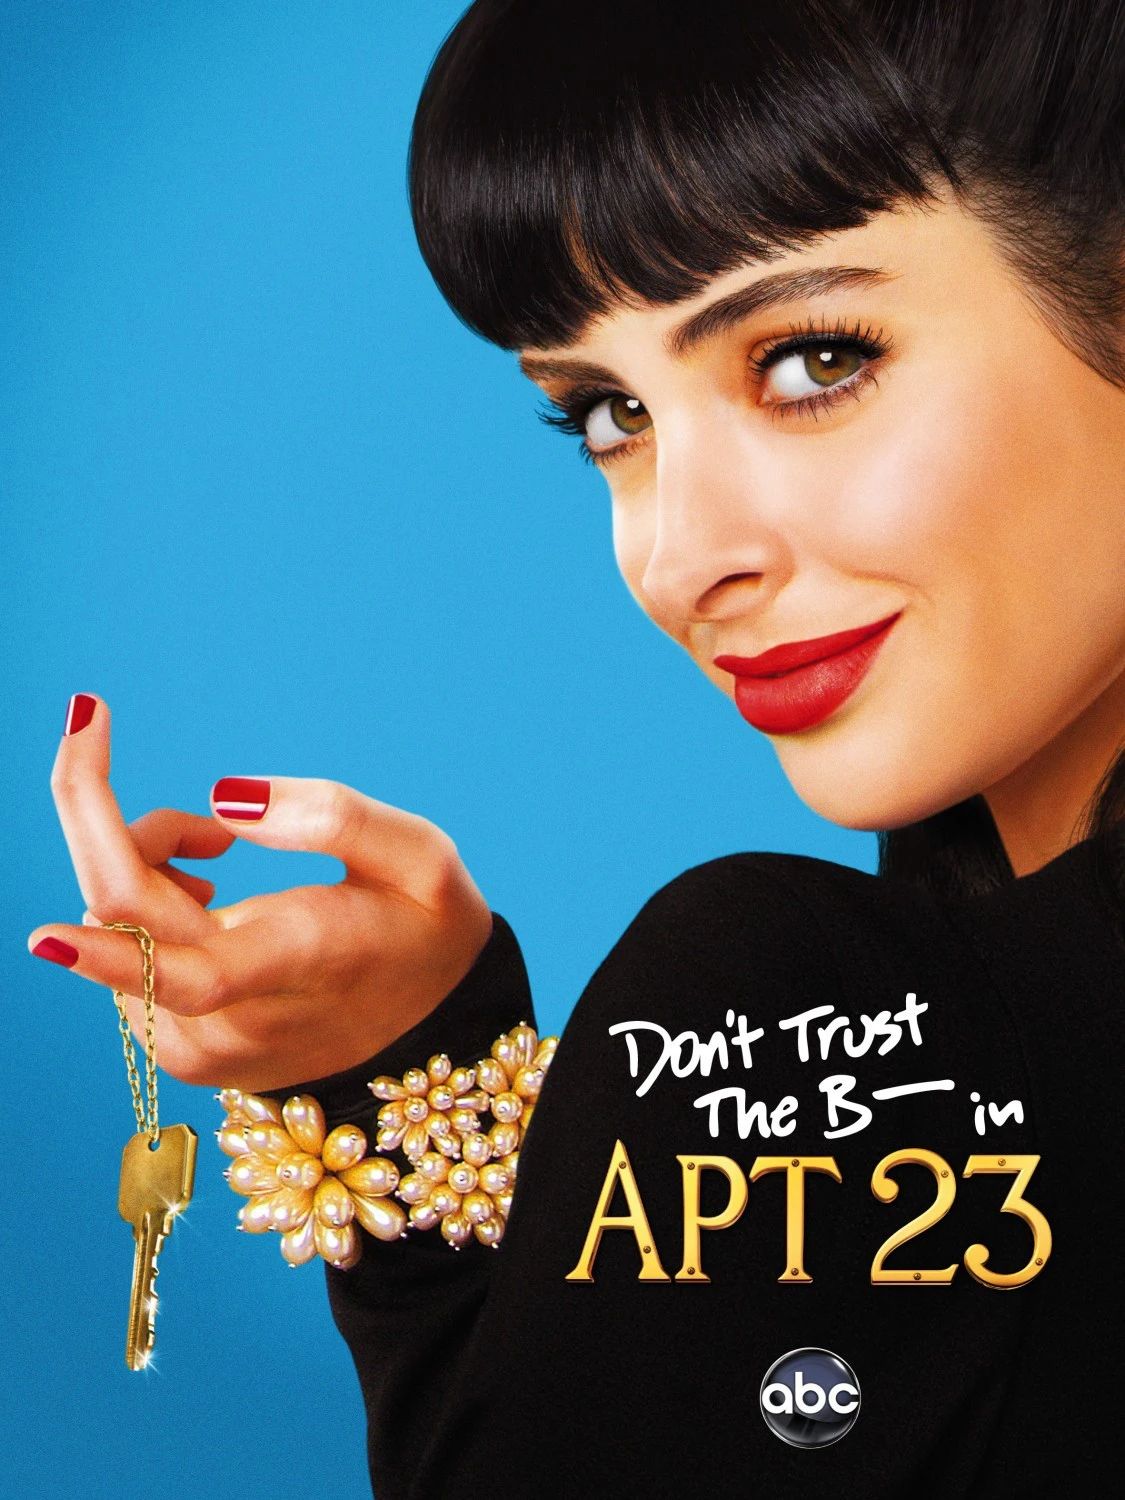 Quỷ Cái Ở Căn Hộ Số 23 | Don't Trust The B- in Apartment 23 (2012)